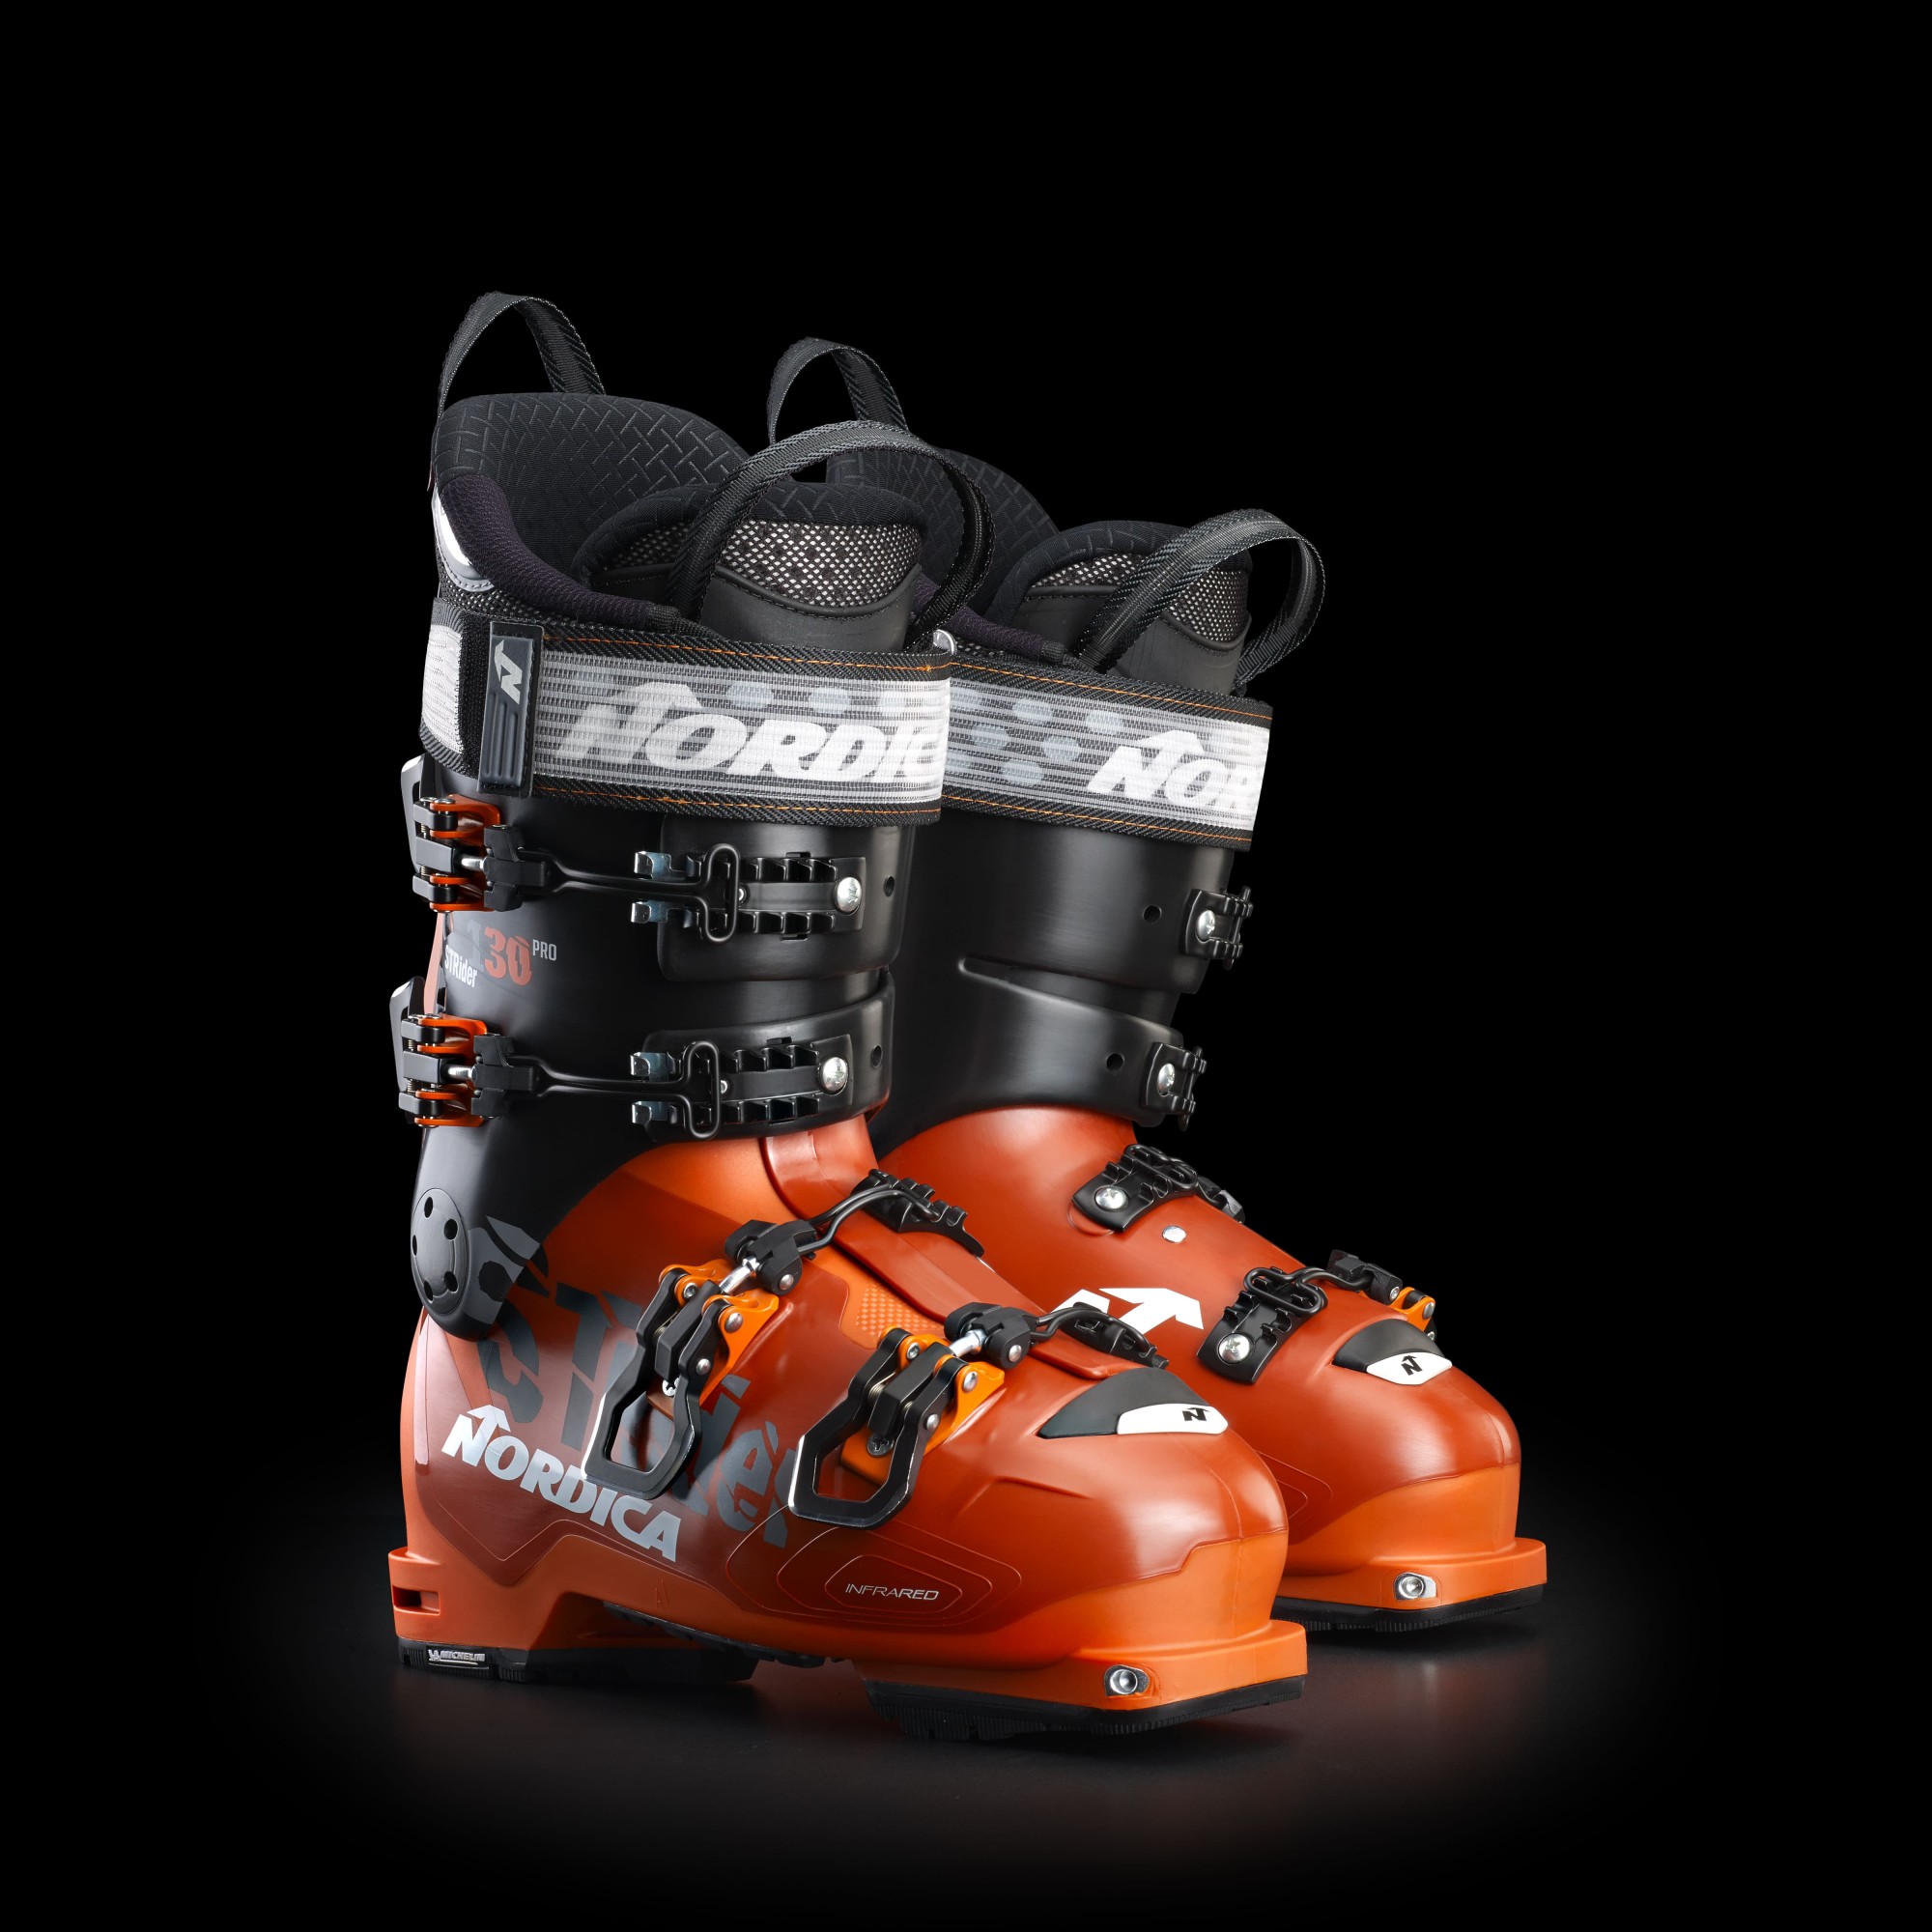 取寄商品 【送料無料】2022 Nordica Strider 130 Pro DYN Men's Ski Boots (29.5)【並行輸入品】 